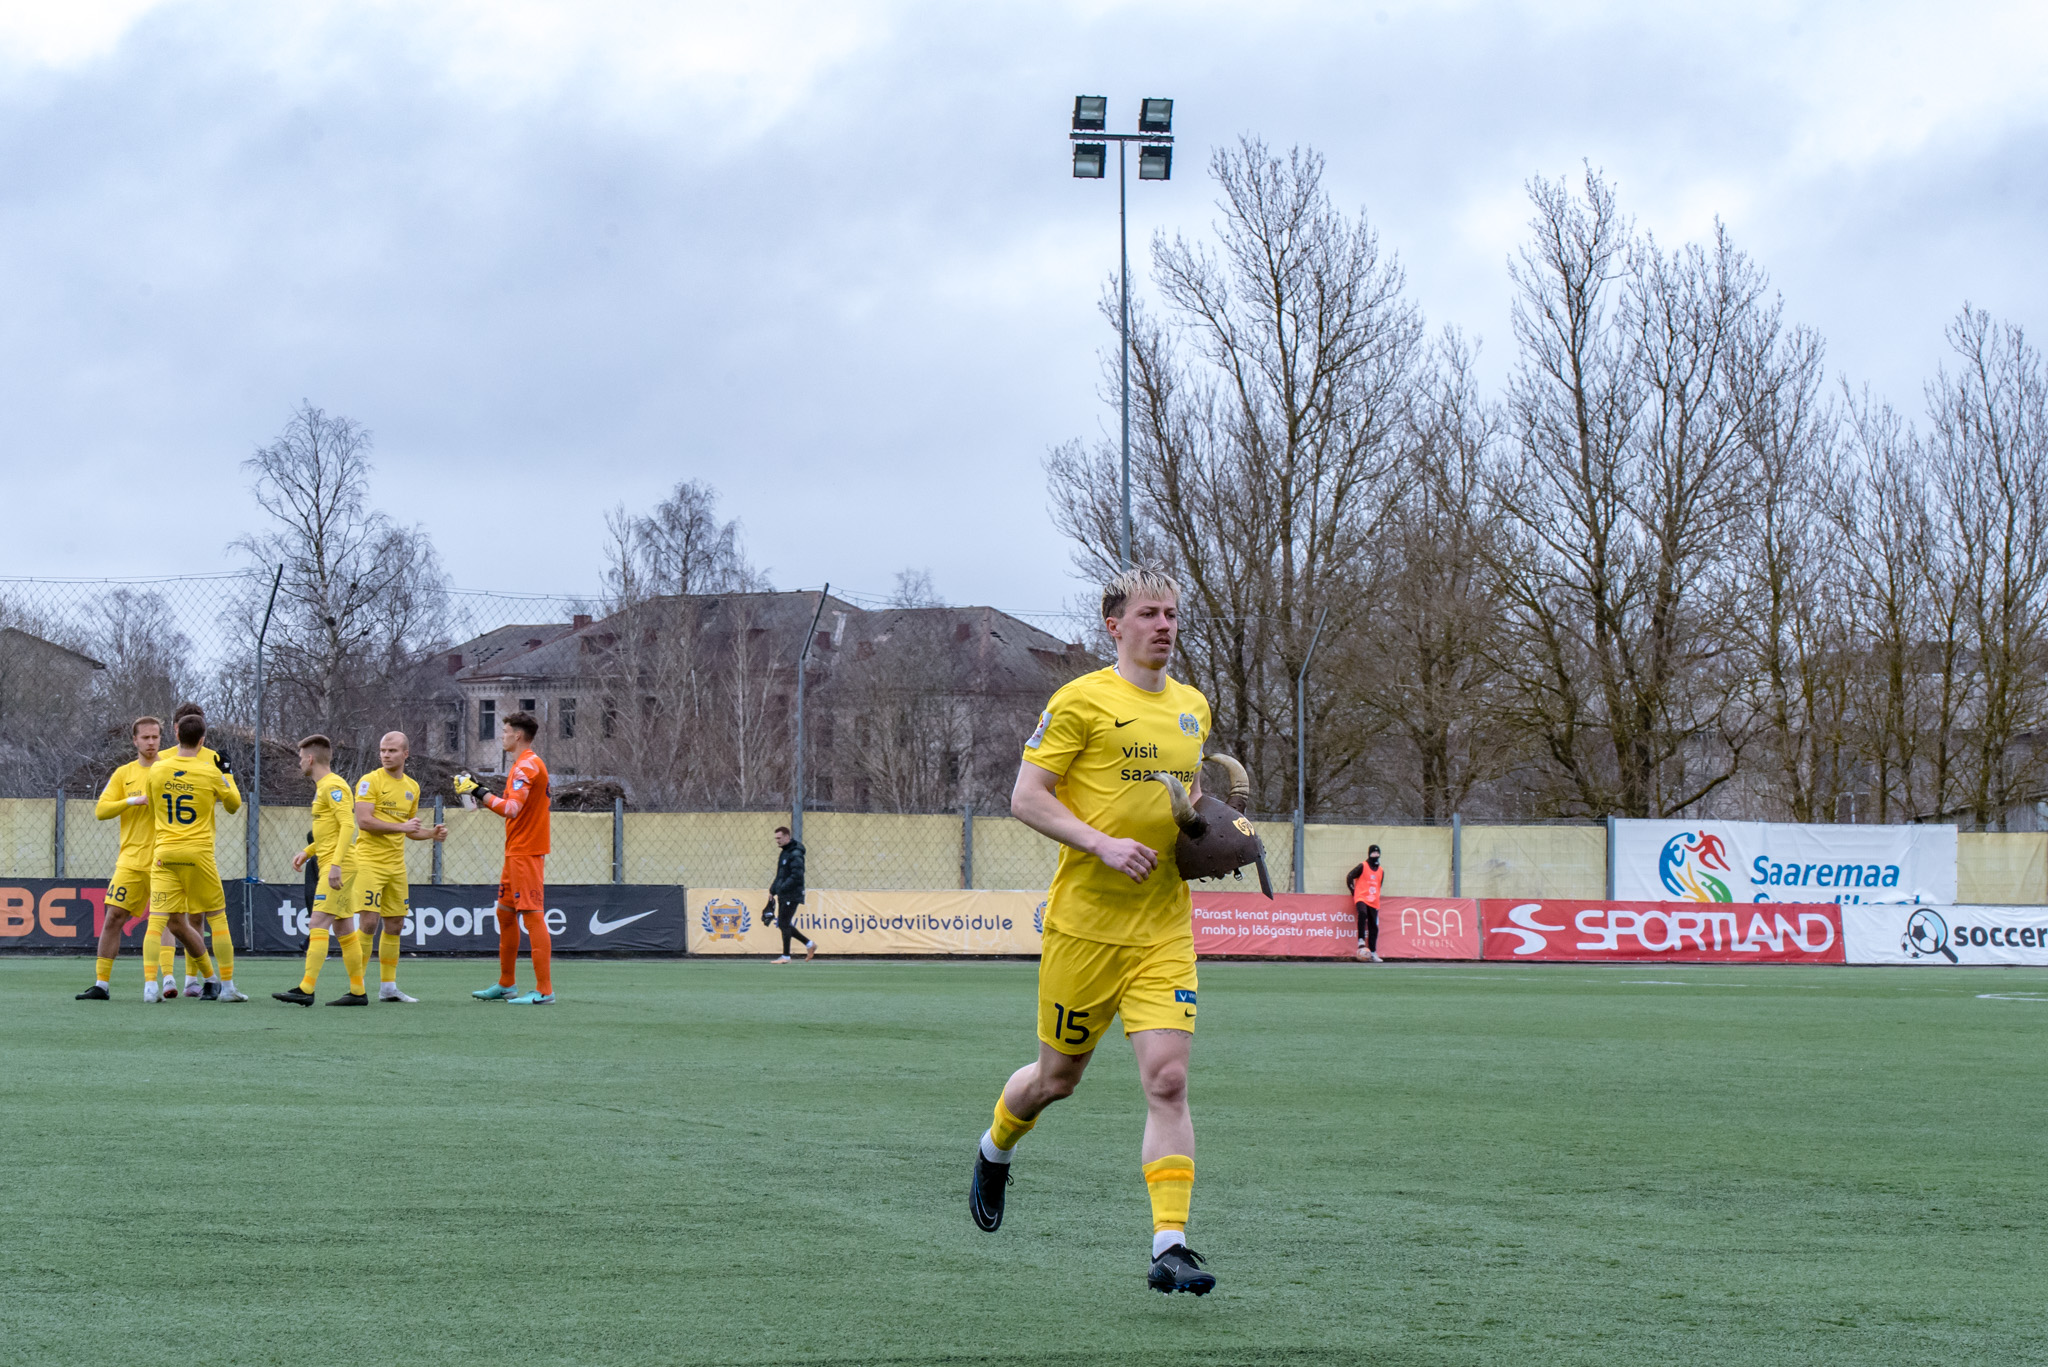 Kohtumises Paide Linnameeskonna vastu penalti realiseerimata jätnud FC Kuressaare kaptenile Märten Pajunurmele oli see 11 meetri punktist alles teine eksimus 20